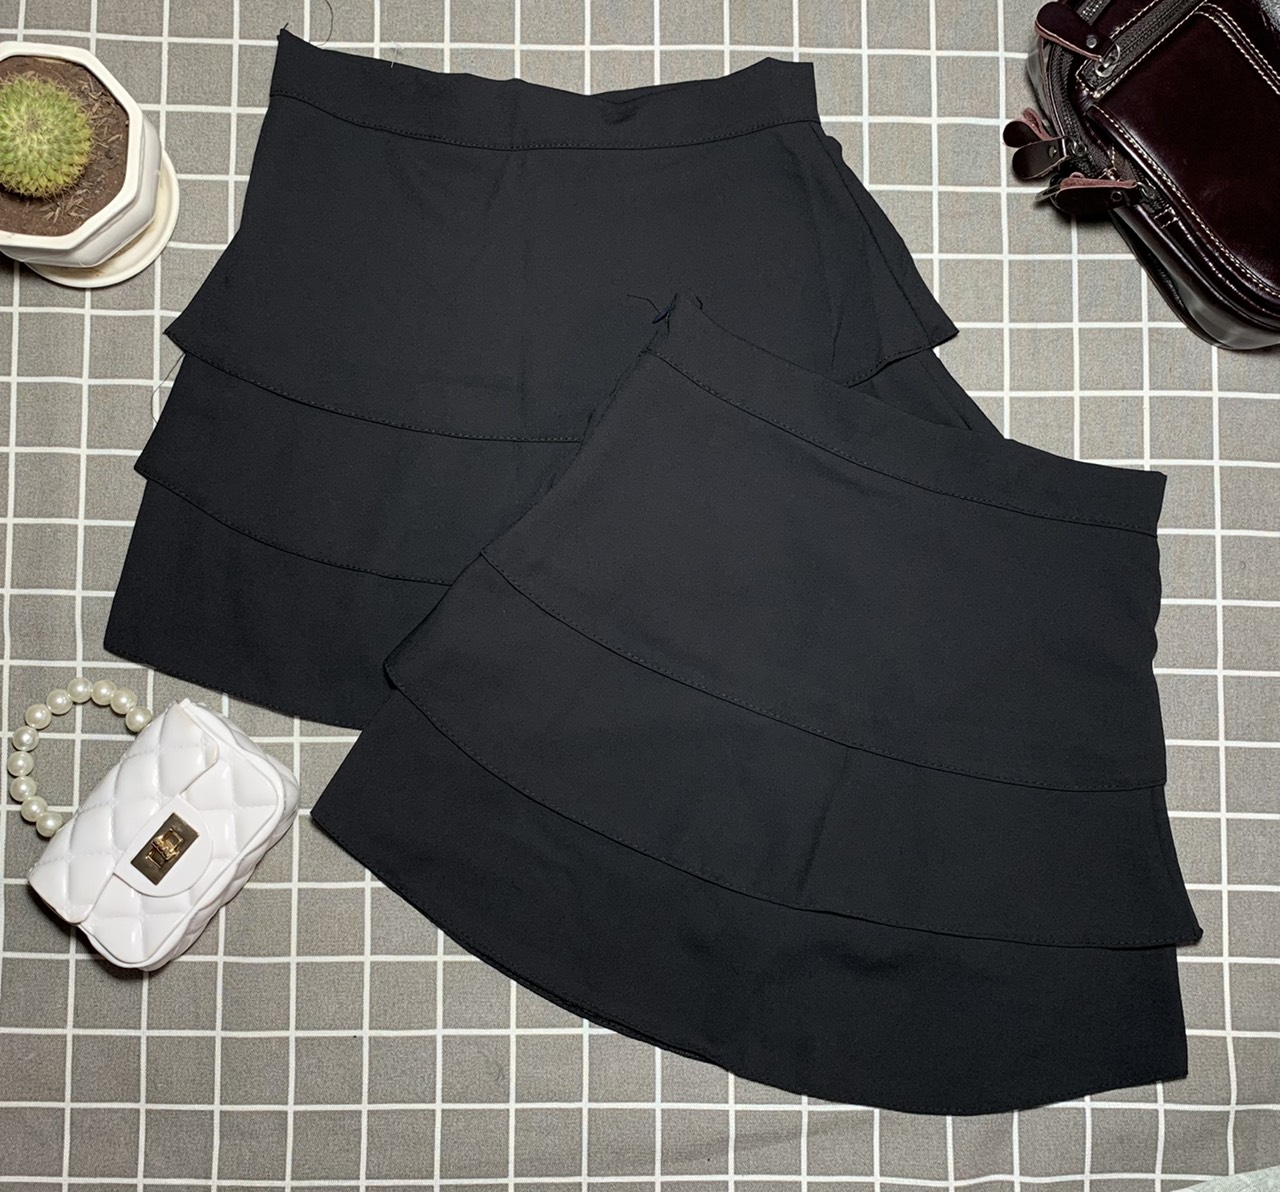 CV2229 - Chân váy ngắn vạt lệch 3 tầng - Thời trang công sở nữ - Bazzi.vn